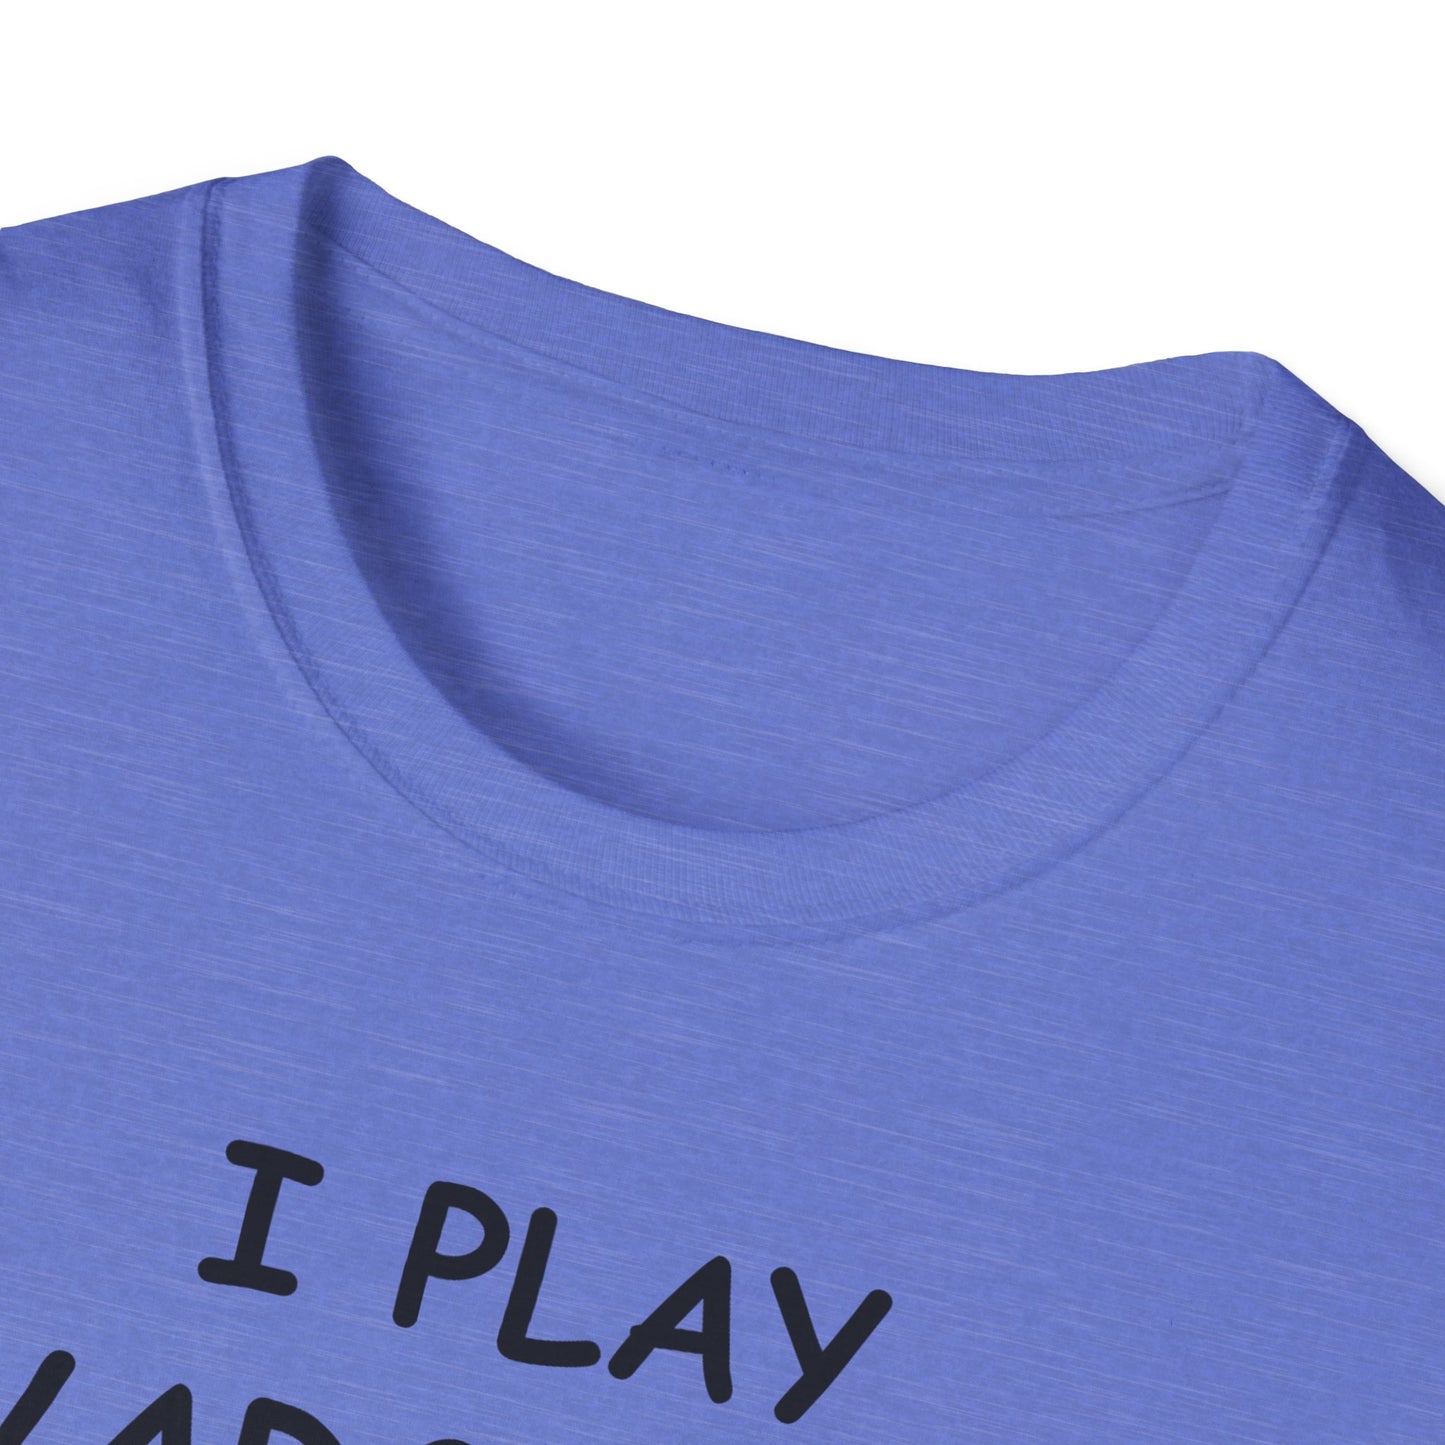 I Play Wargames - Black - Unisex Softstyle T-Shirt